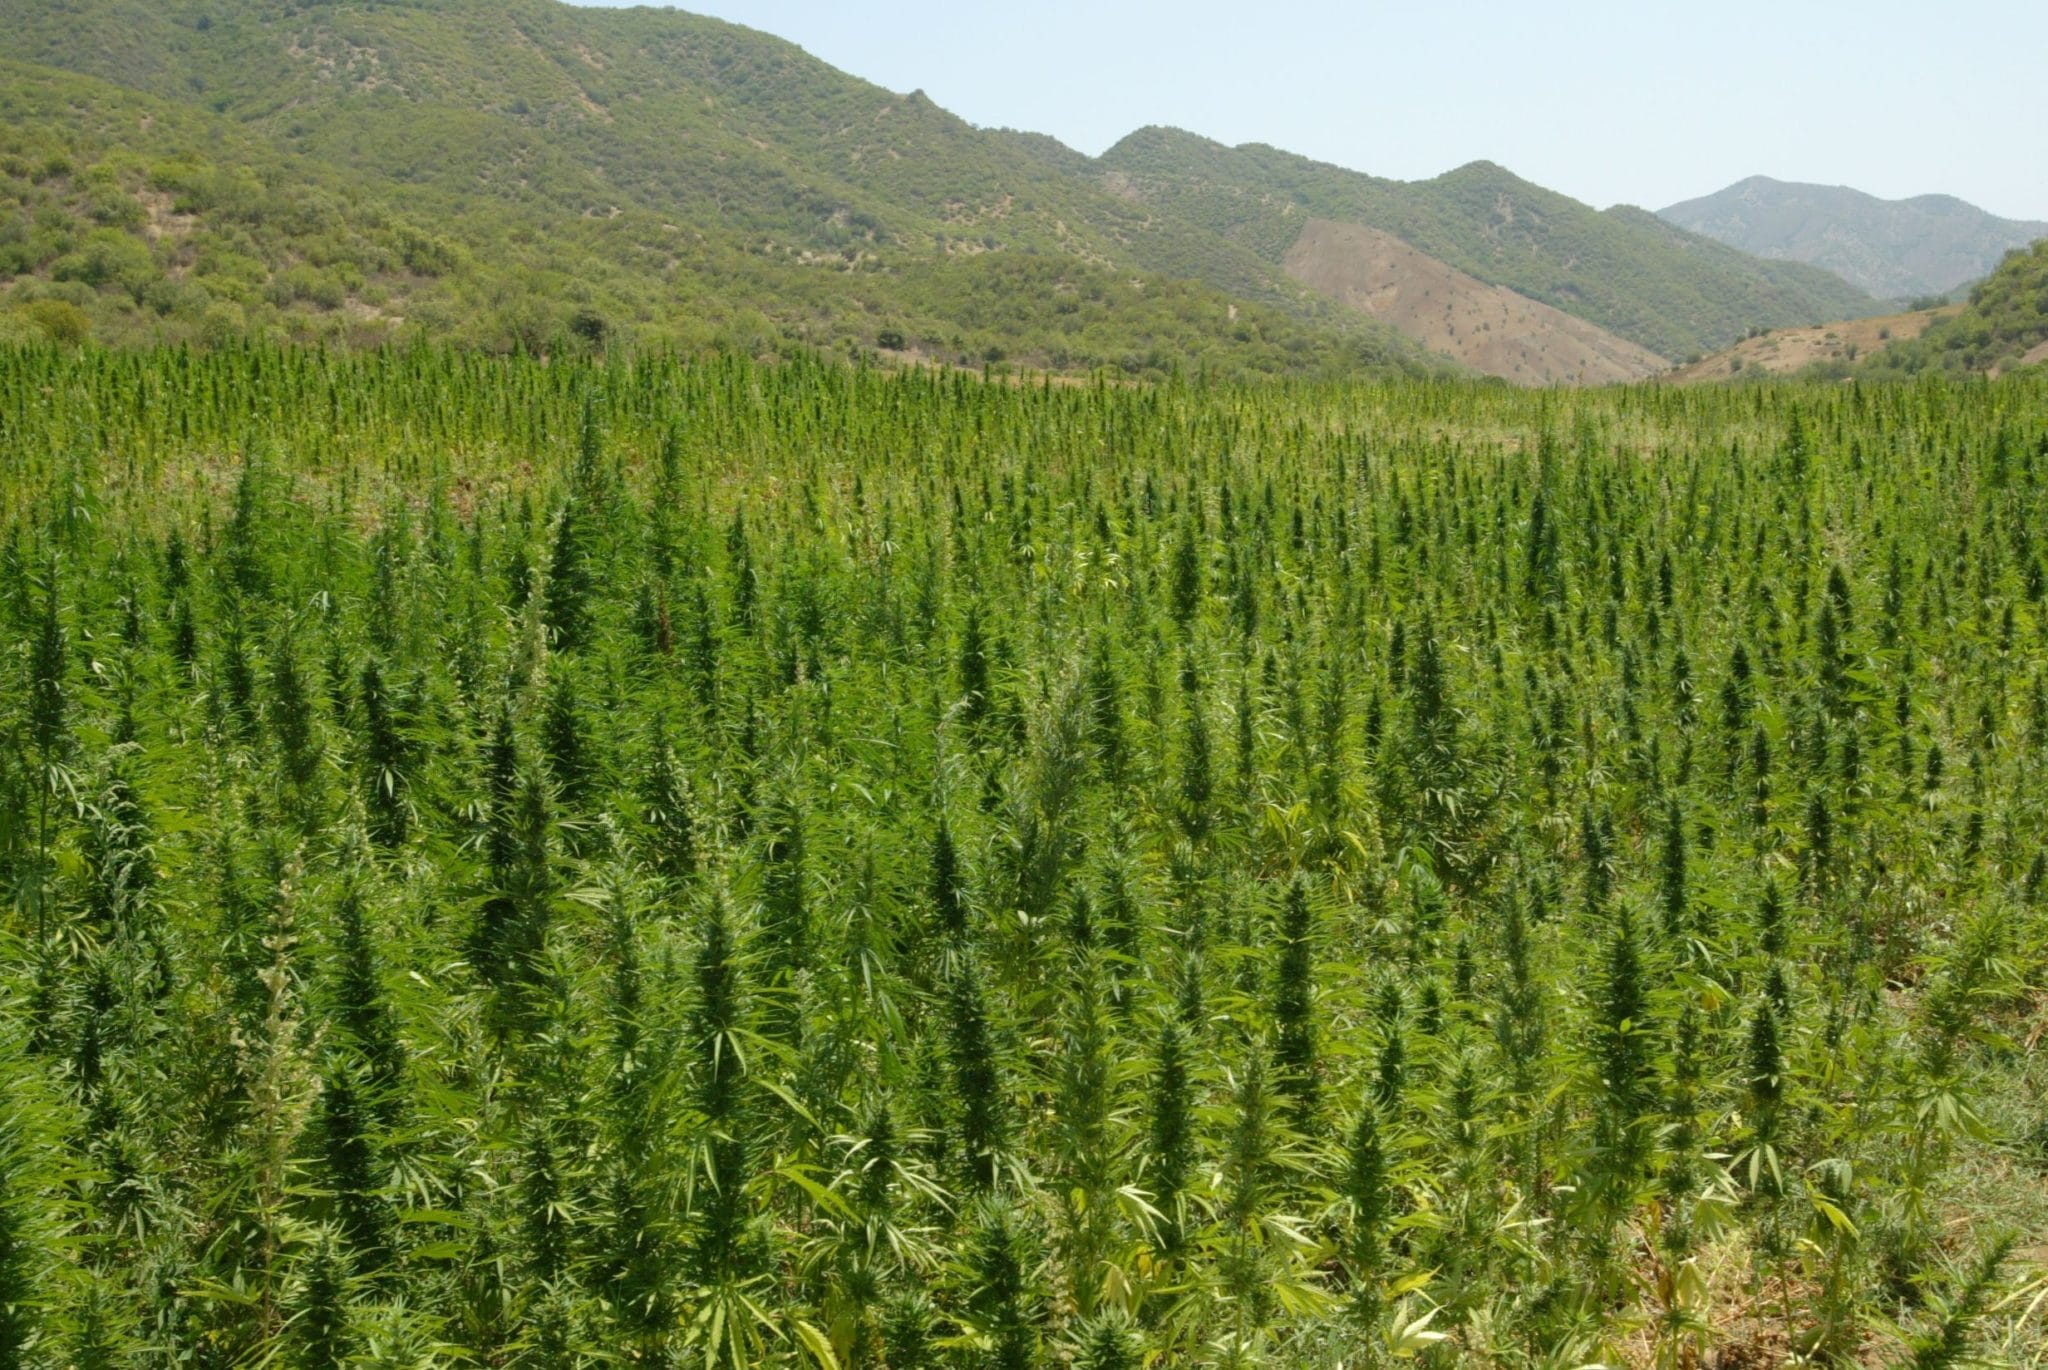 Un campo di cannabis a Elkolla, a 100 km da Larache nella regione montuosa del Rif in Marocco. Immagine ripresa da Flickr/tellmagazine in licenza CC